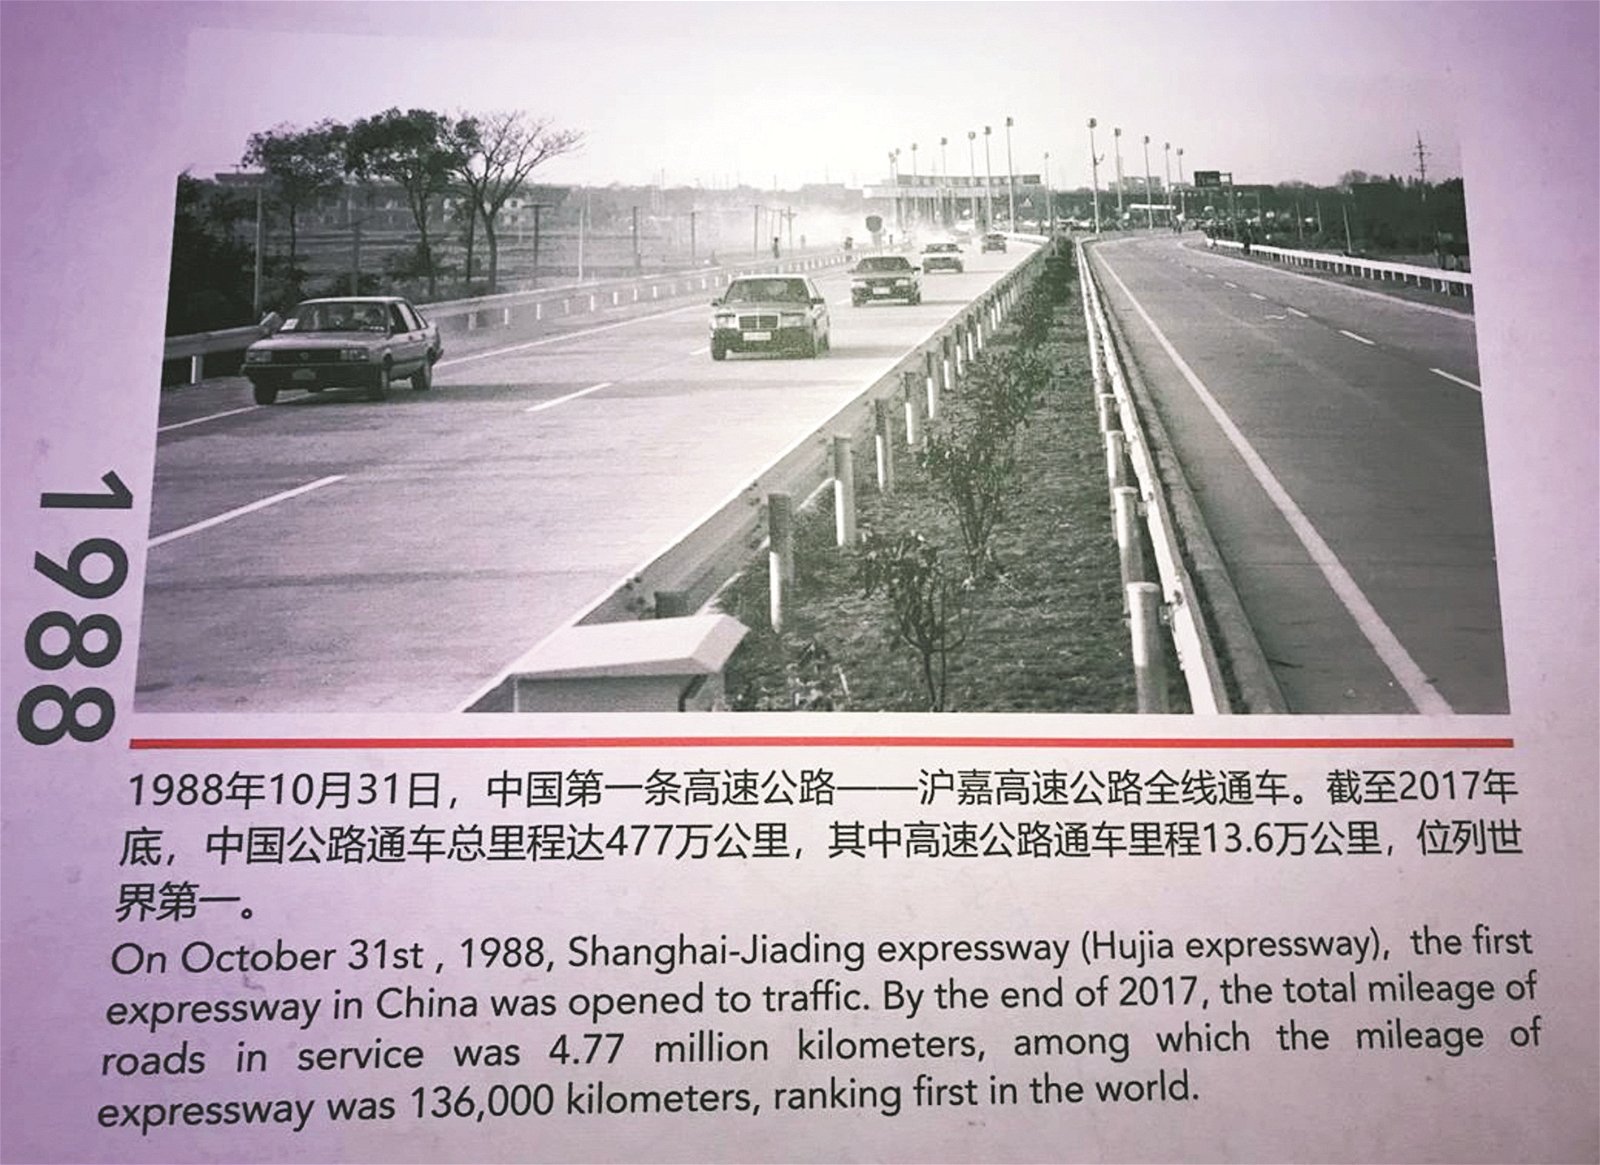 《共建美好未来》大型图片展第1章“砥砺奋进、神州新 天”，记录了中国改革开放以来各个时期的重大事件和瞩目成 就。图为中国在1988年10月31日正式开通了首条高速公路。